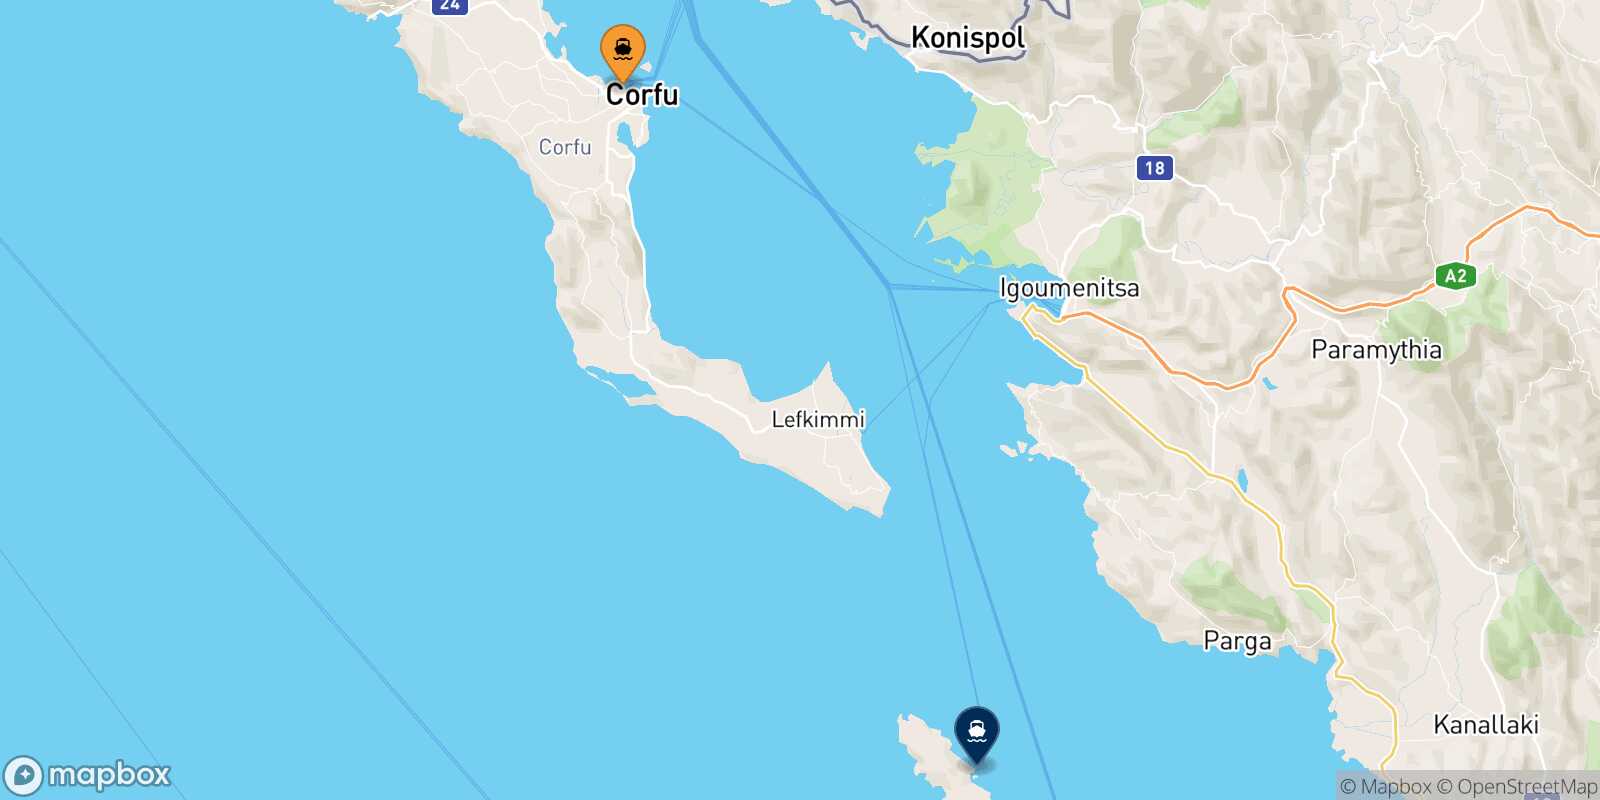 Mappa della rotta Corfu Paxos